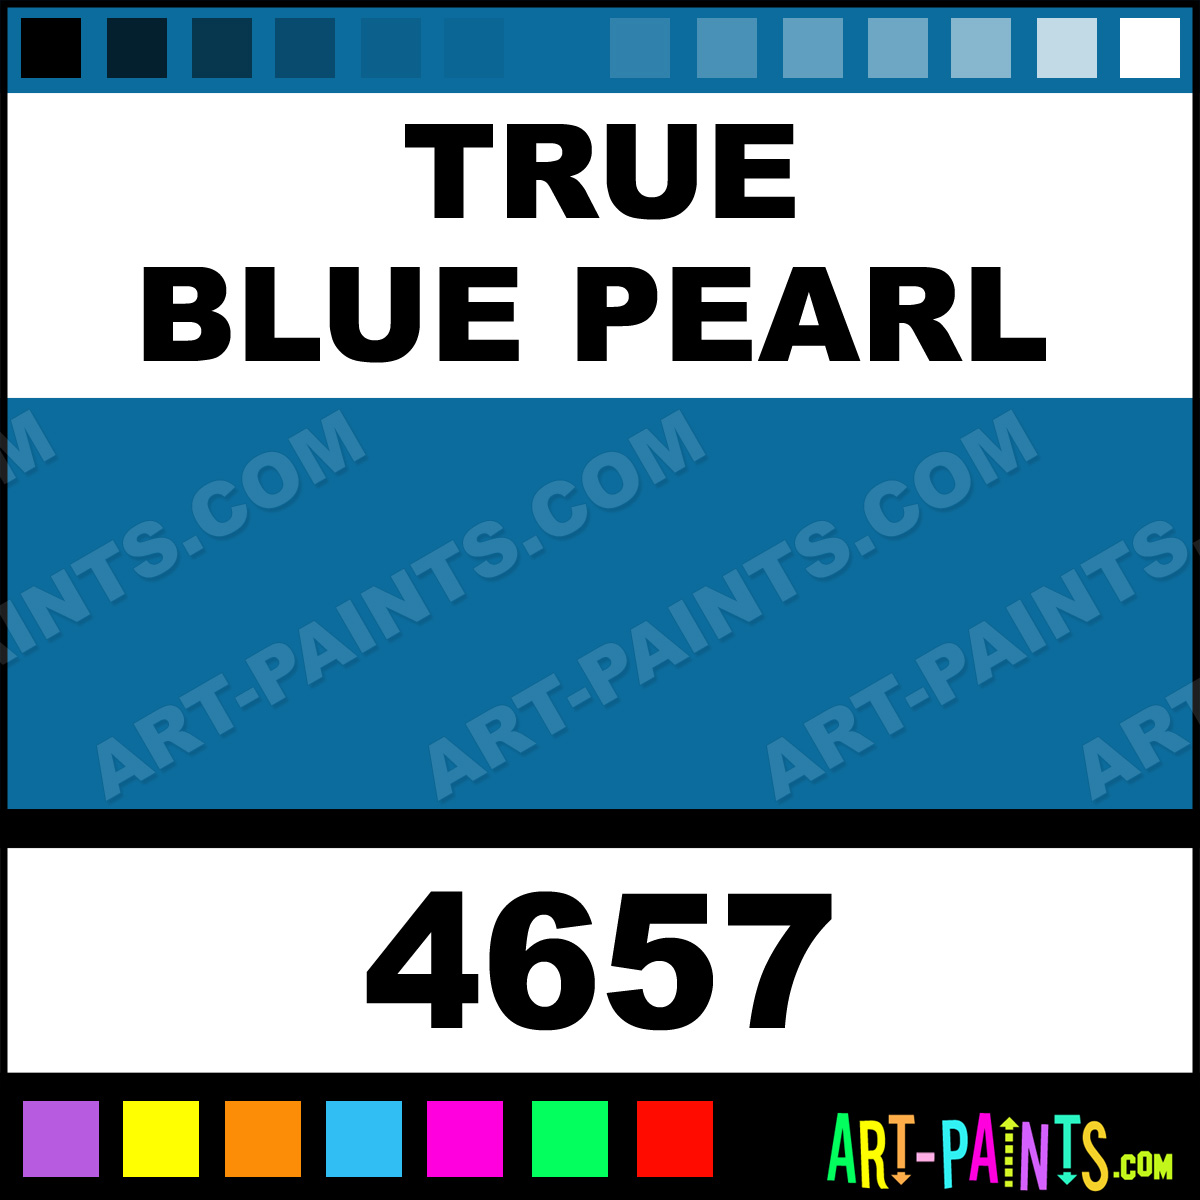 True-Blue-Pearl-lg.jpg